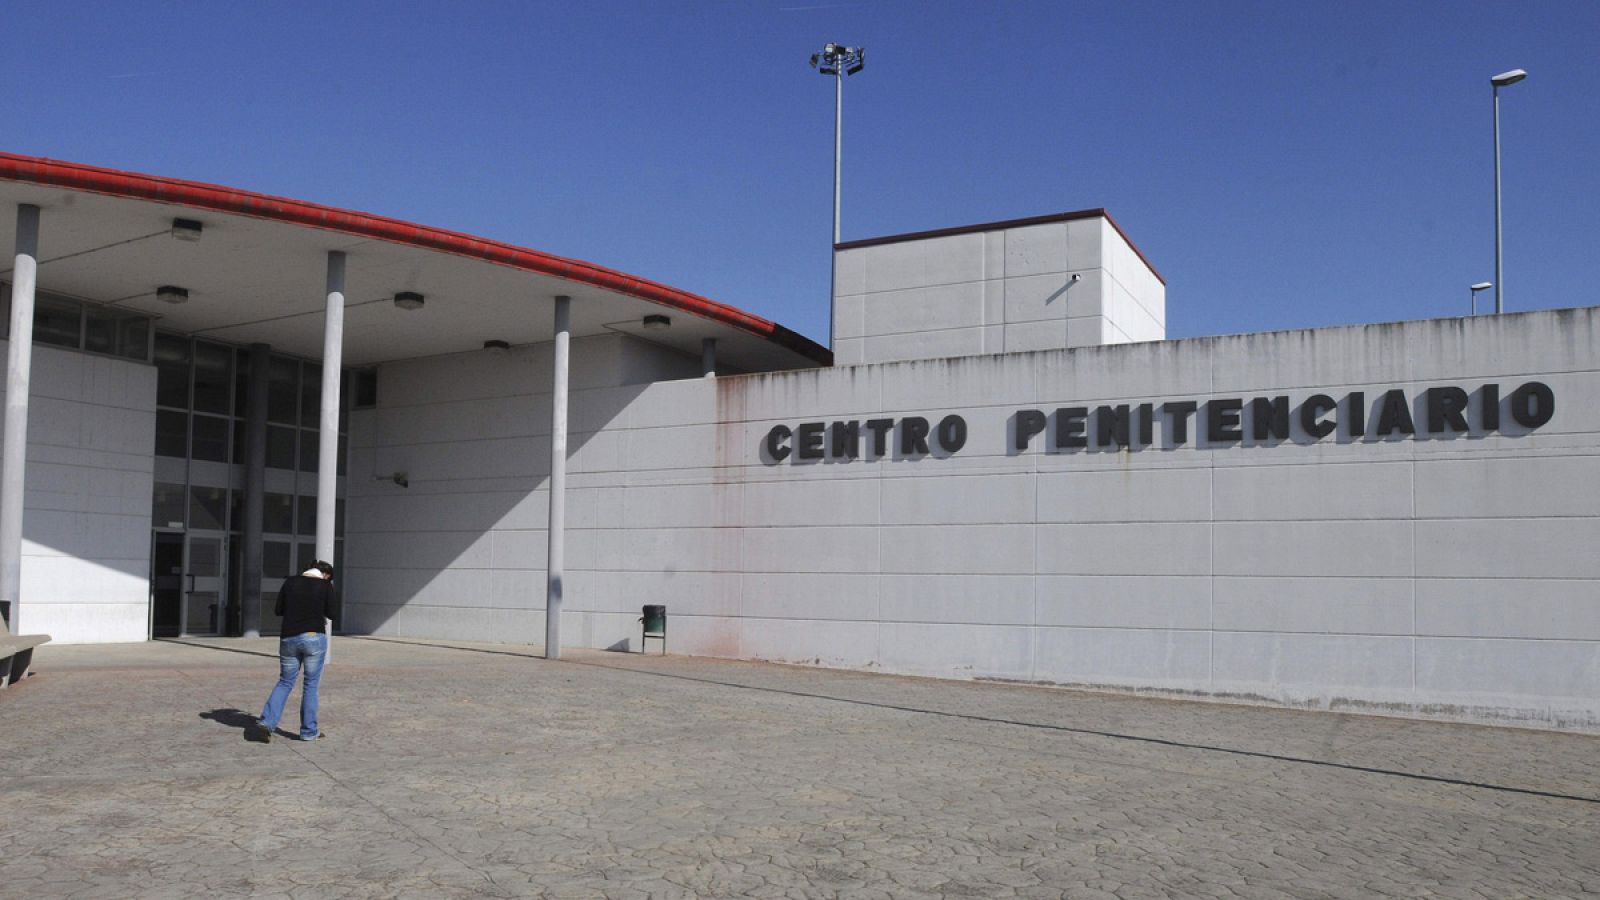 Centro penitenciario de Mansilla de las Mulas (León)